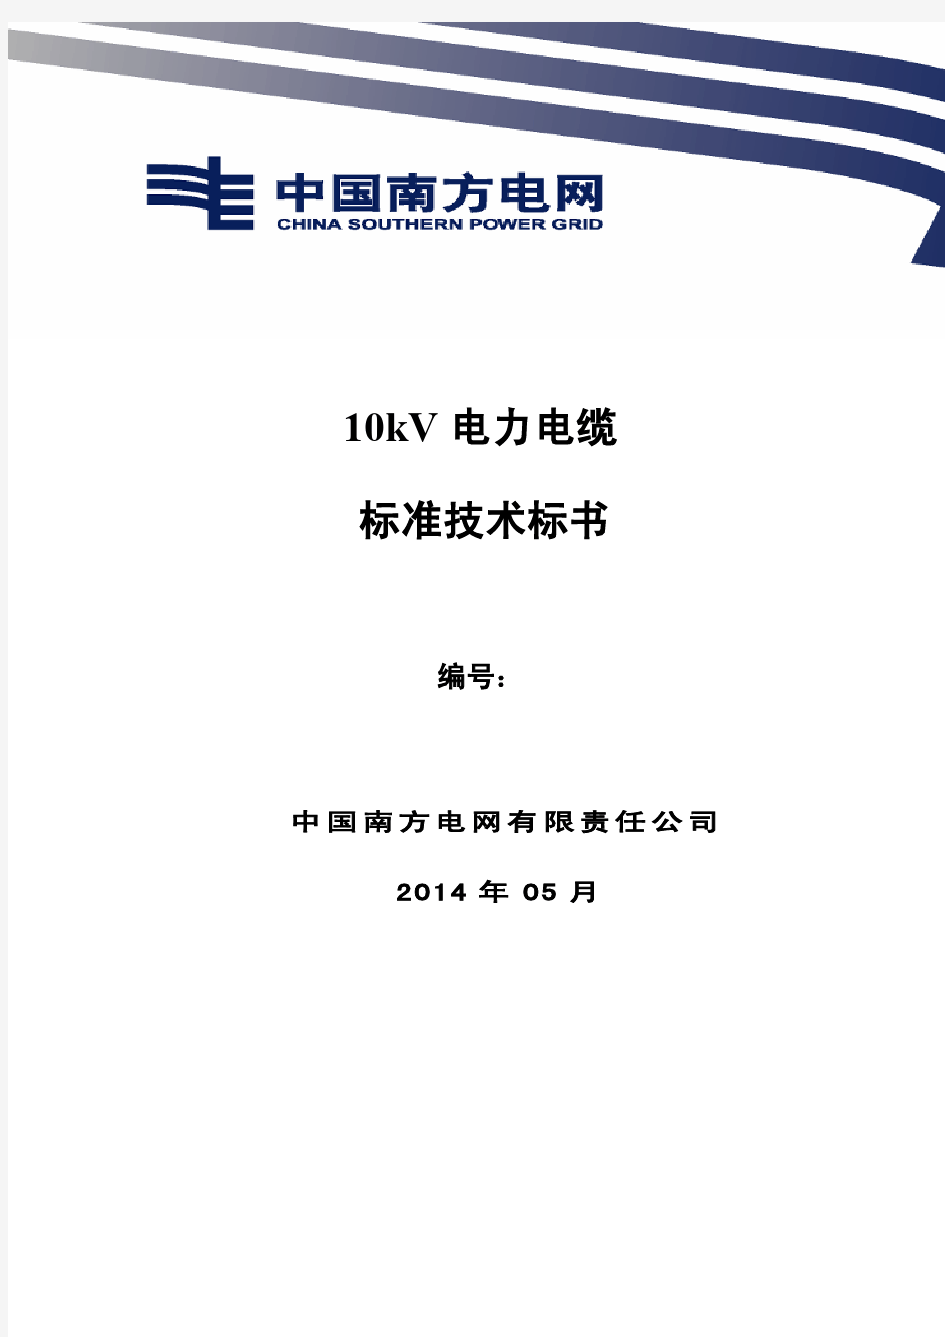 南方电网设备标准技术标书-10kV 电力电缆(2014版)